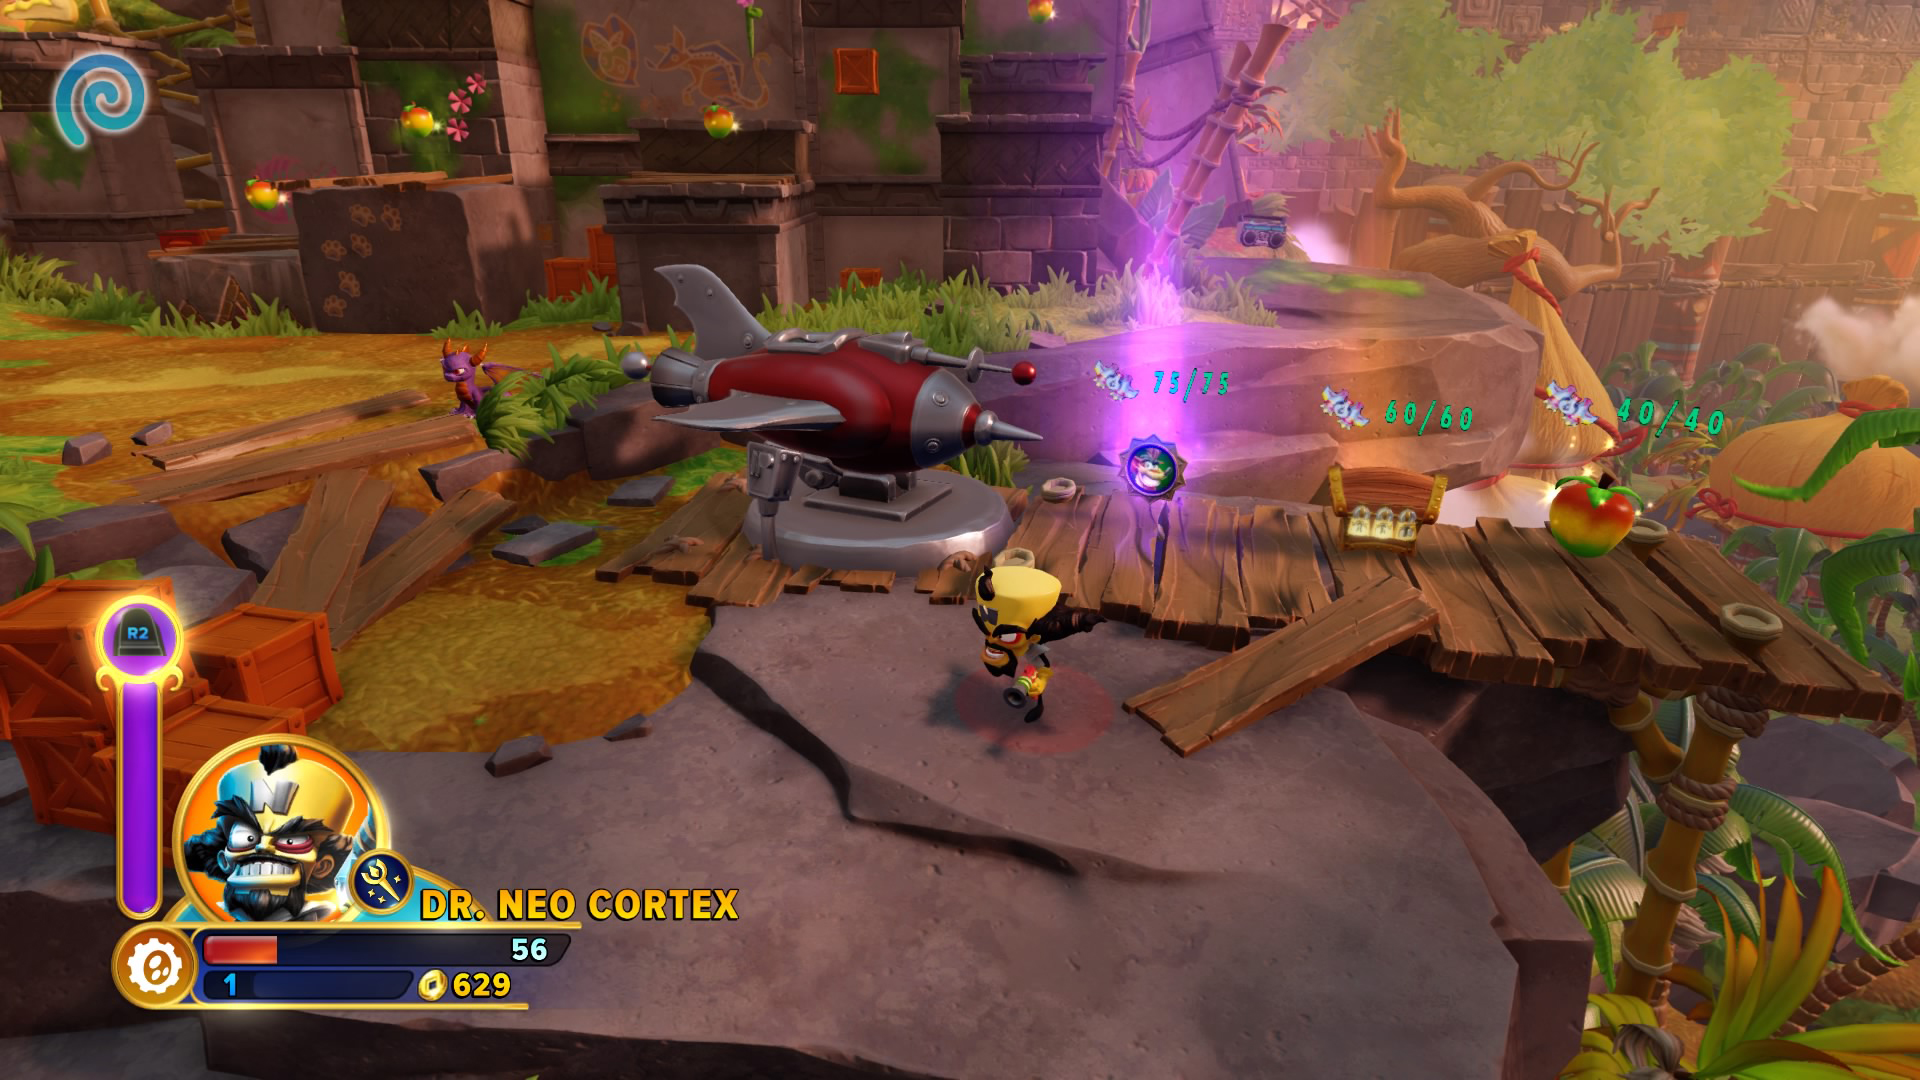 Skylanders Imaginators - Crash Bandicoot Edition - Dr. Neo Cortex